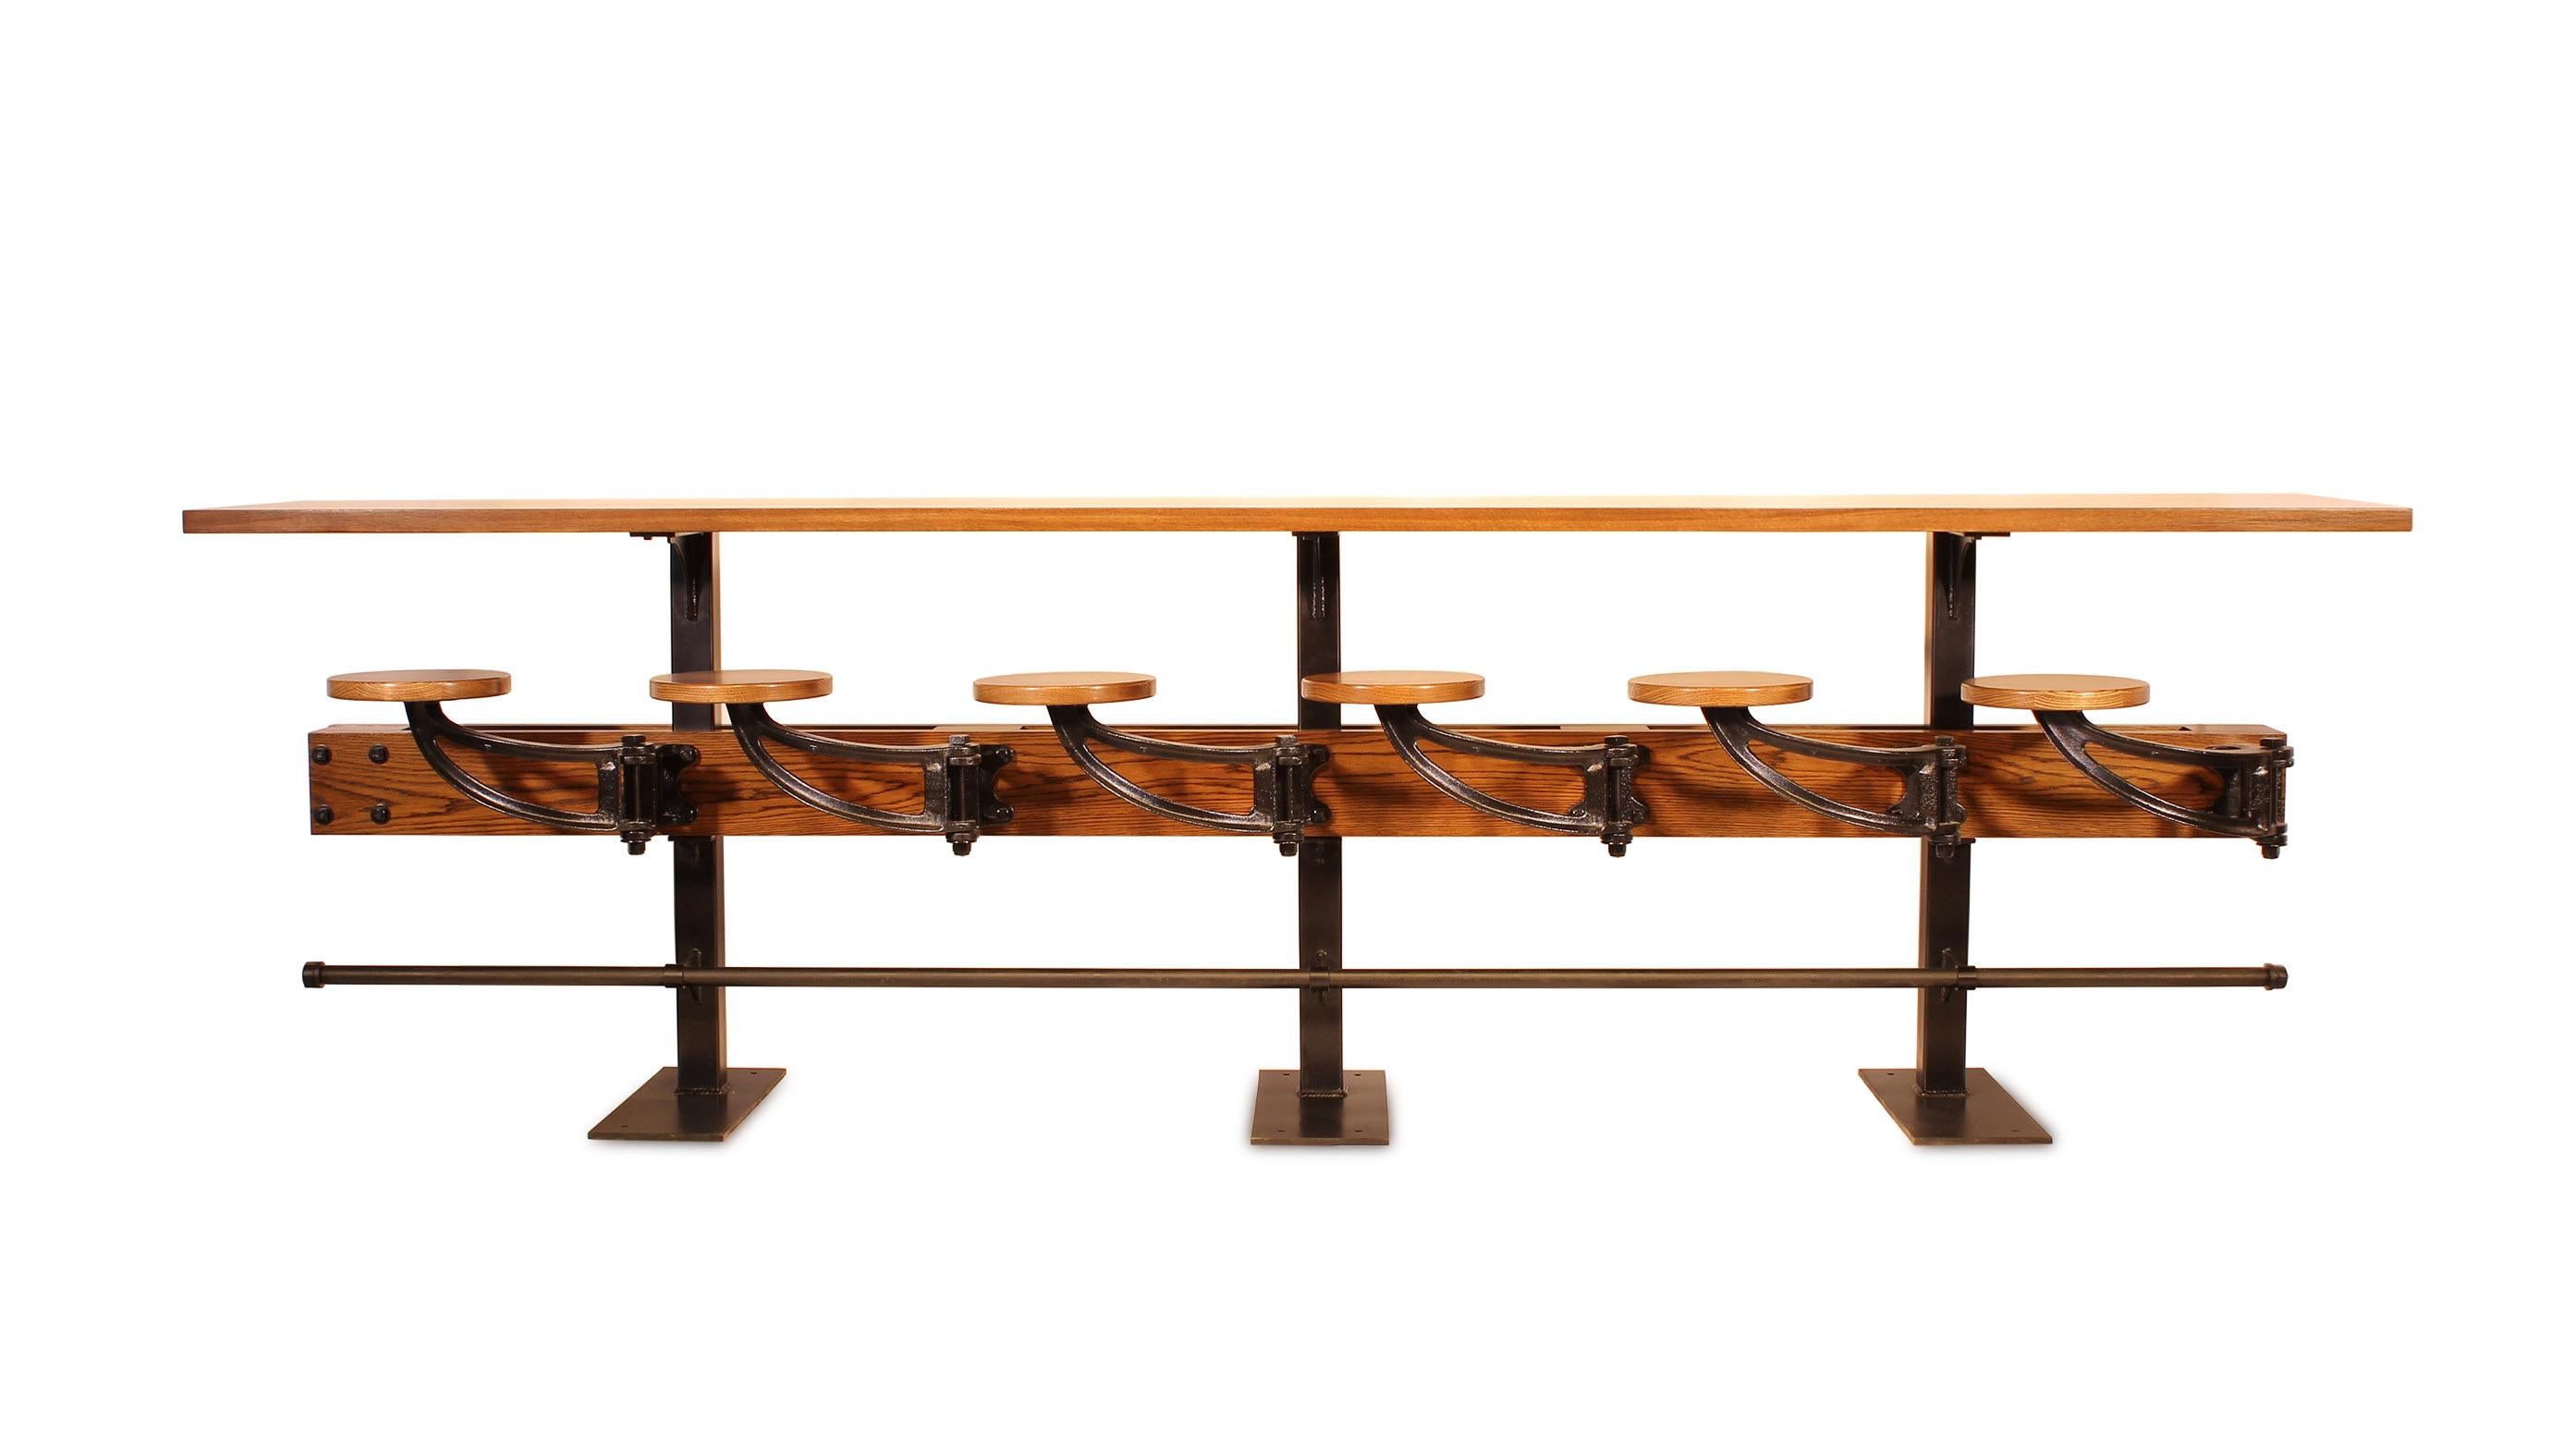 Moulage Table de café/de comptoir avec sièges pivotants attachés, conçue pour les spécificités en vente